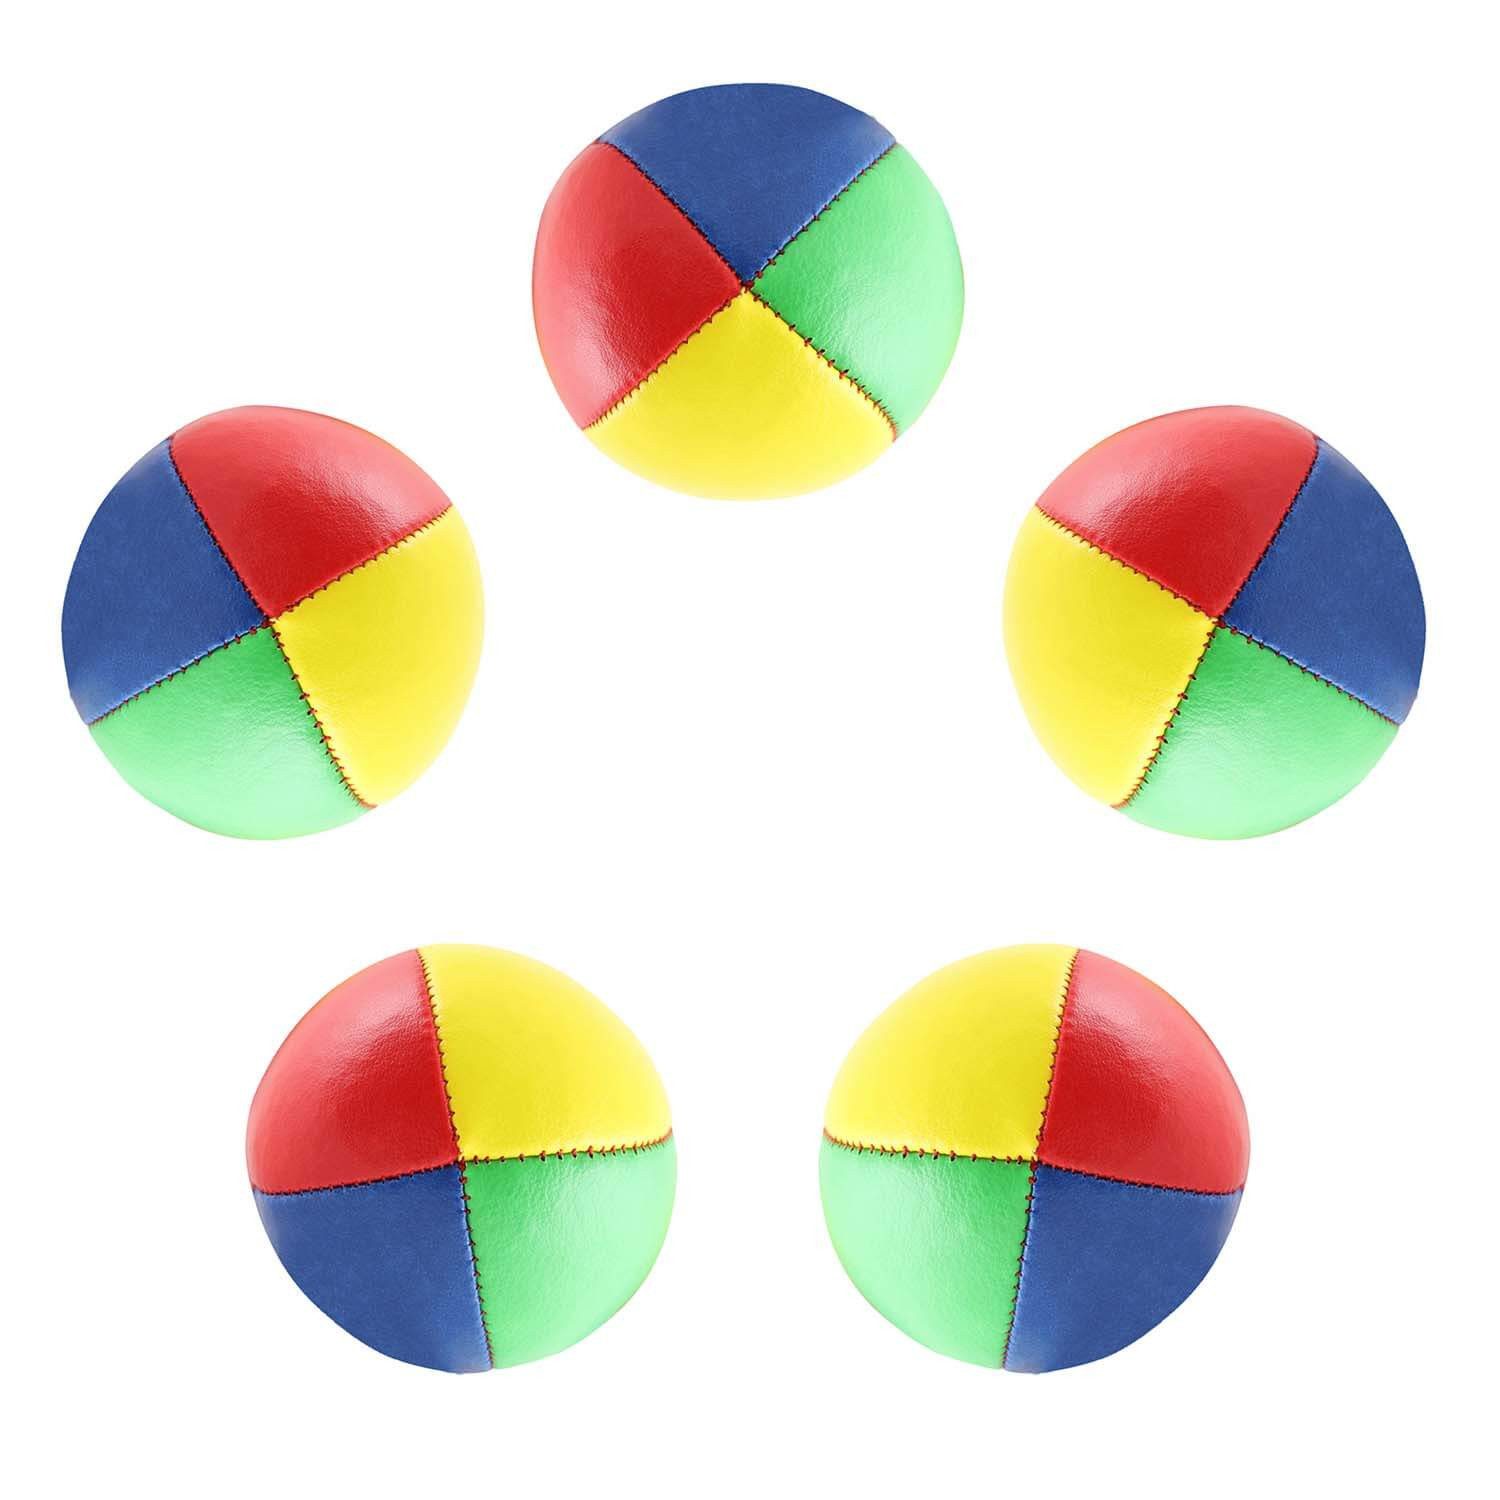 Diabolo Freizeitsport Spielball zum Jonglieren (5er Set 62mm Jonglierbälle, 100g vierfarbig)